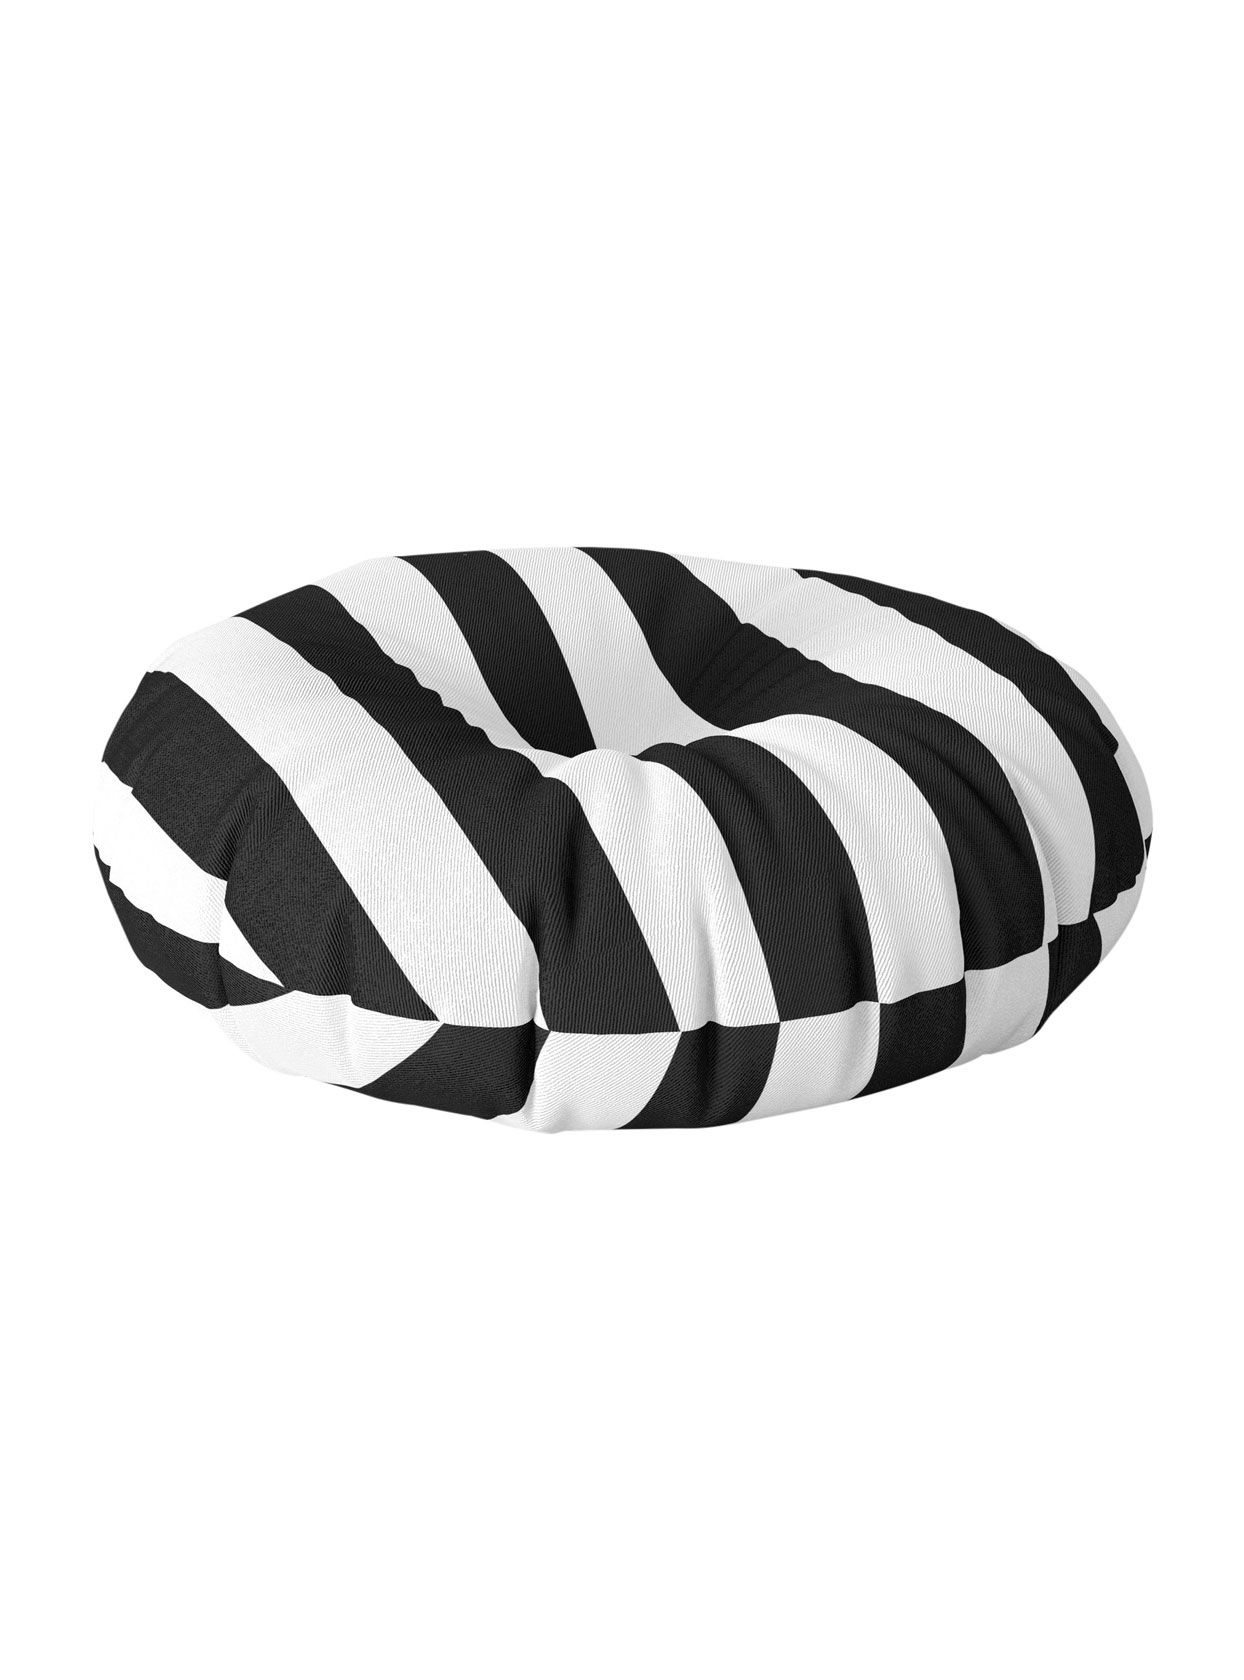 Black & White Vertical Stripes Floor Pillow